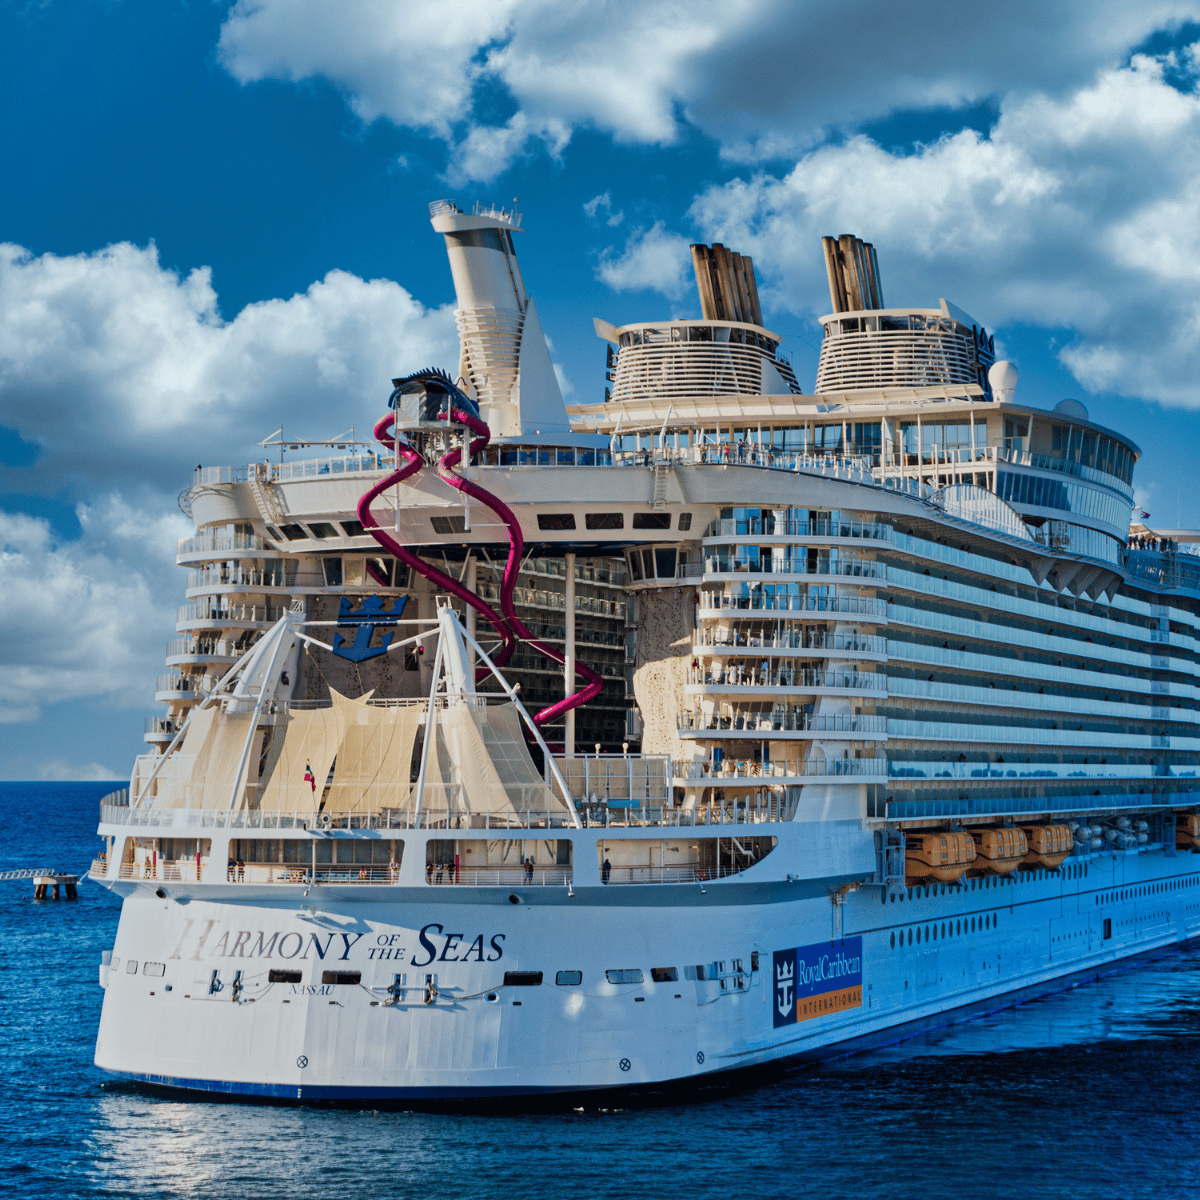 Royal Caribbean Cruise Ships - Harmony Of The Seas